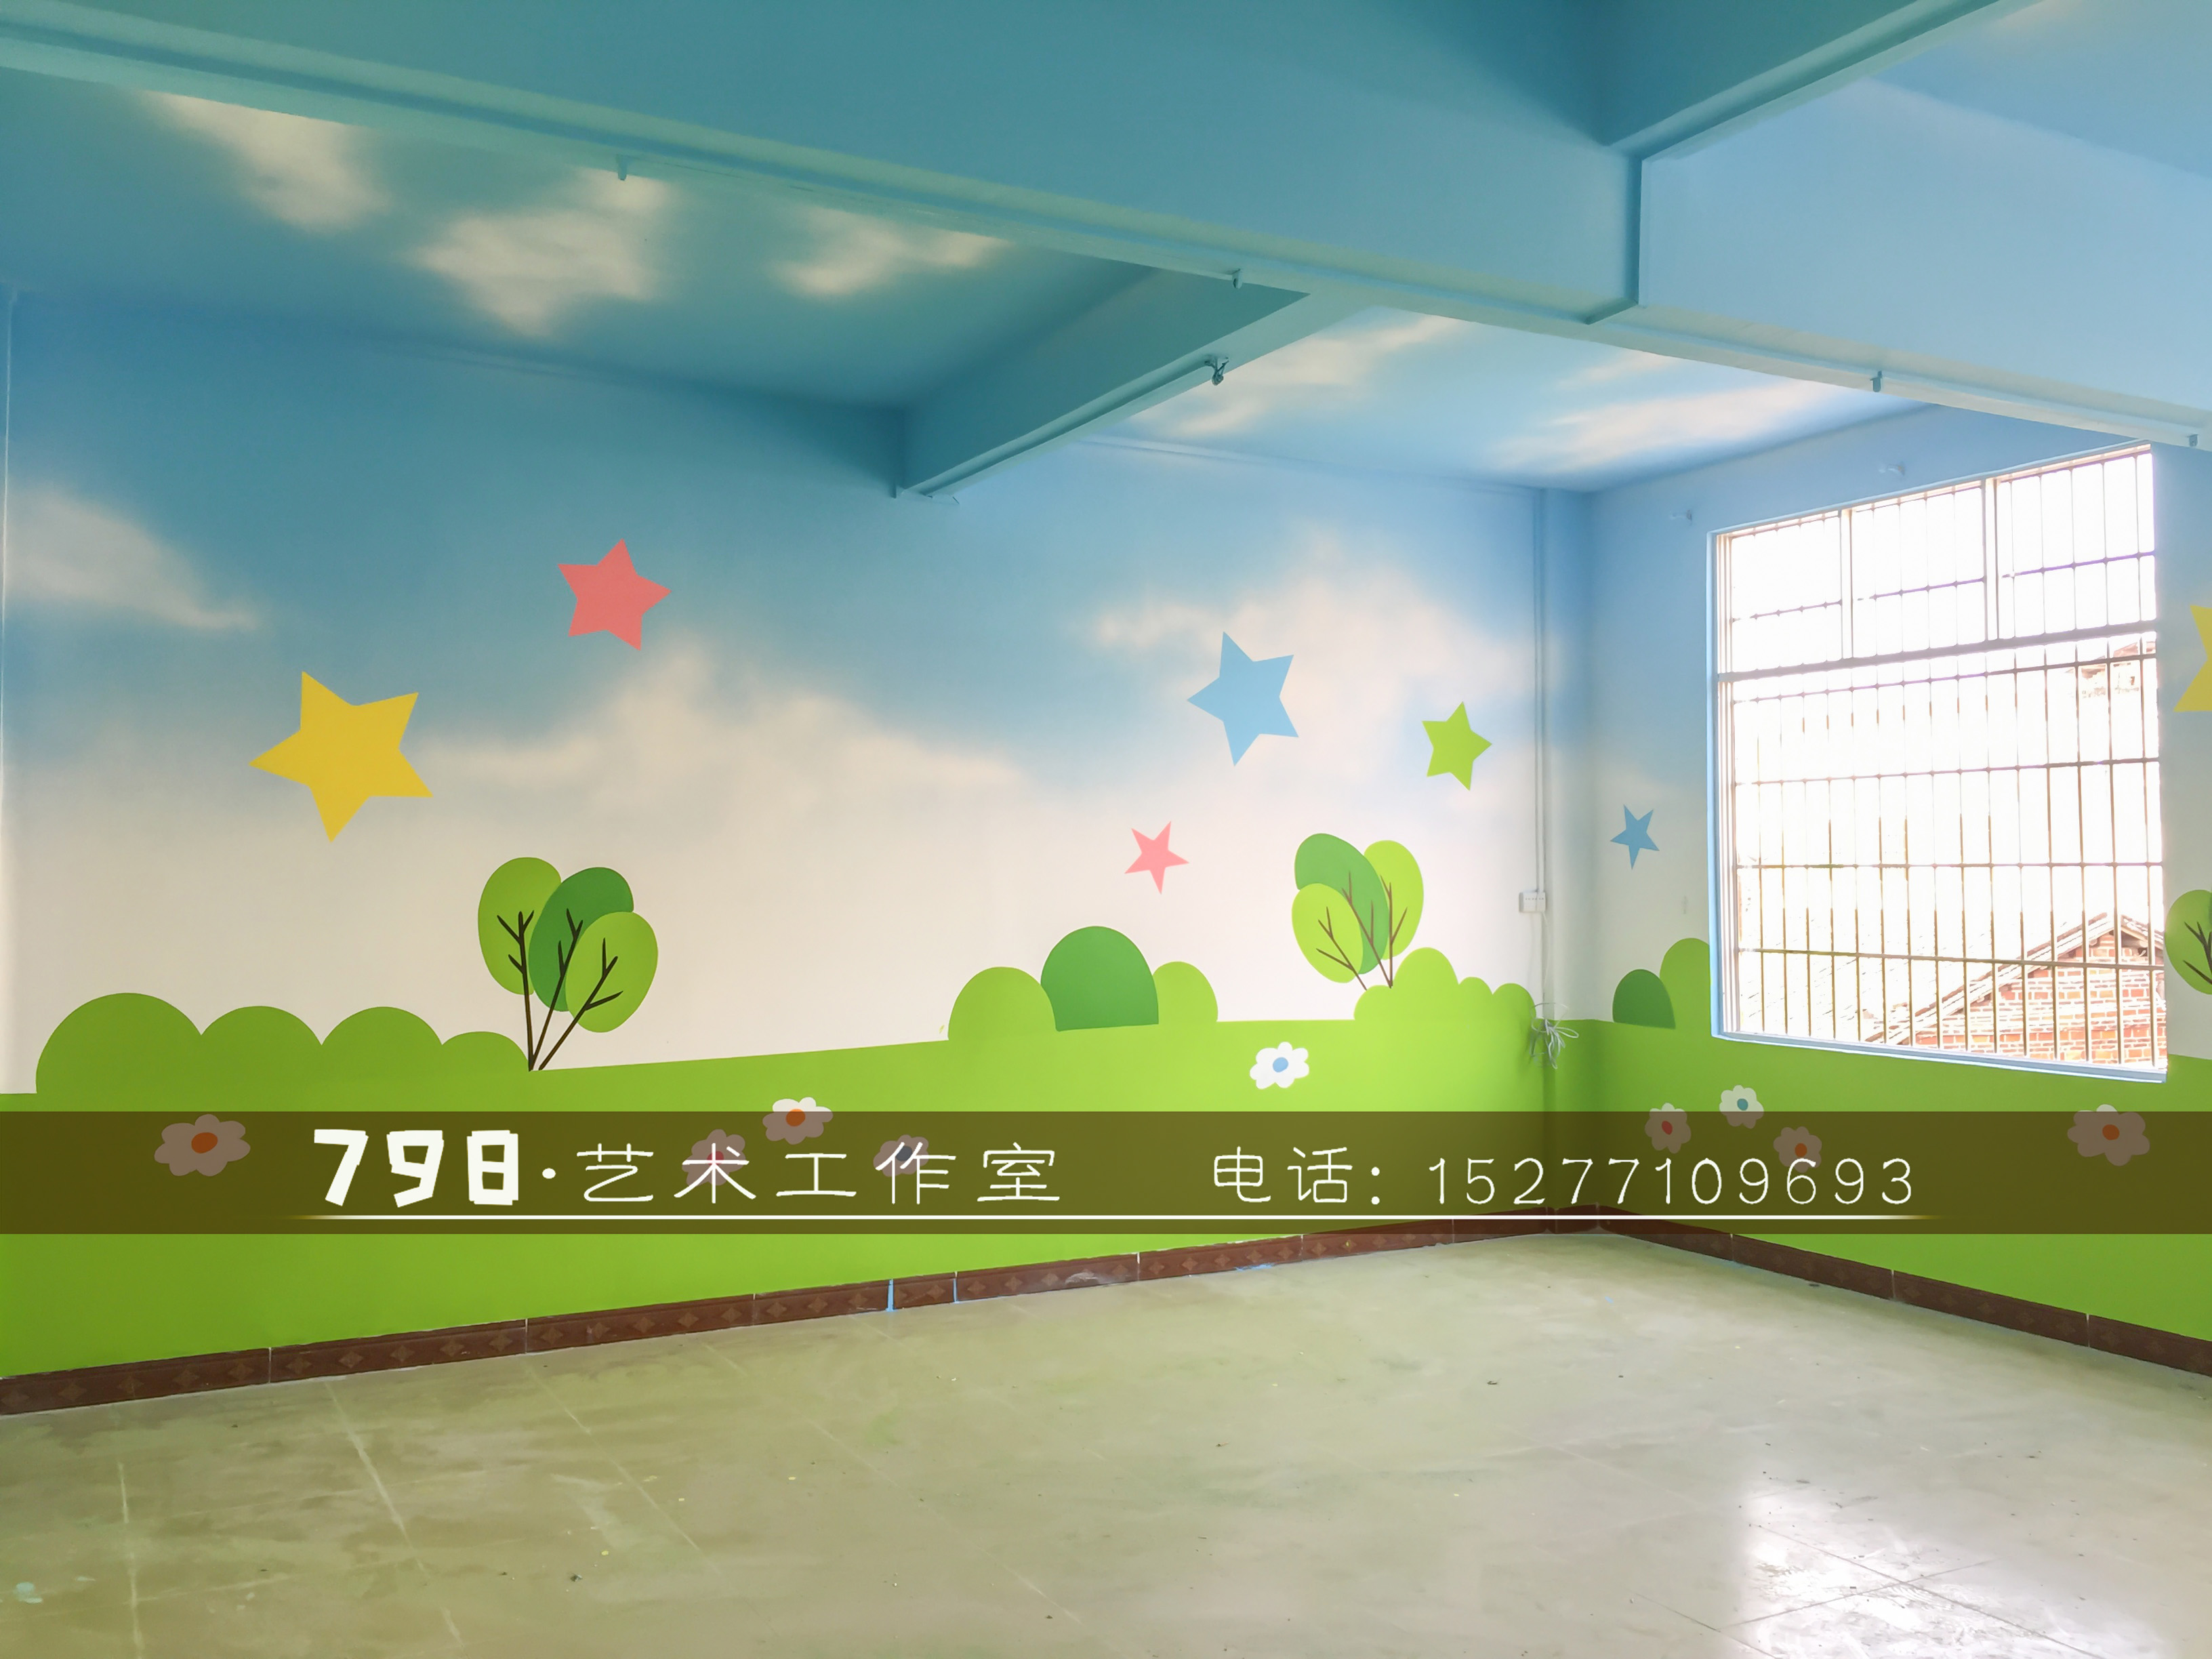 南宁798艺术工作室——专业幼儿园彩绘/喷绘/墙绘/手绘/墙画/设计装修